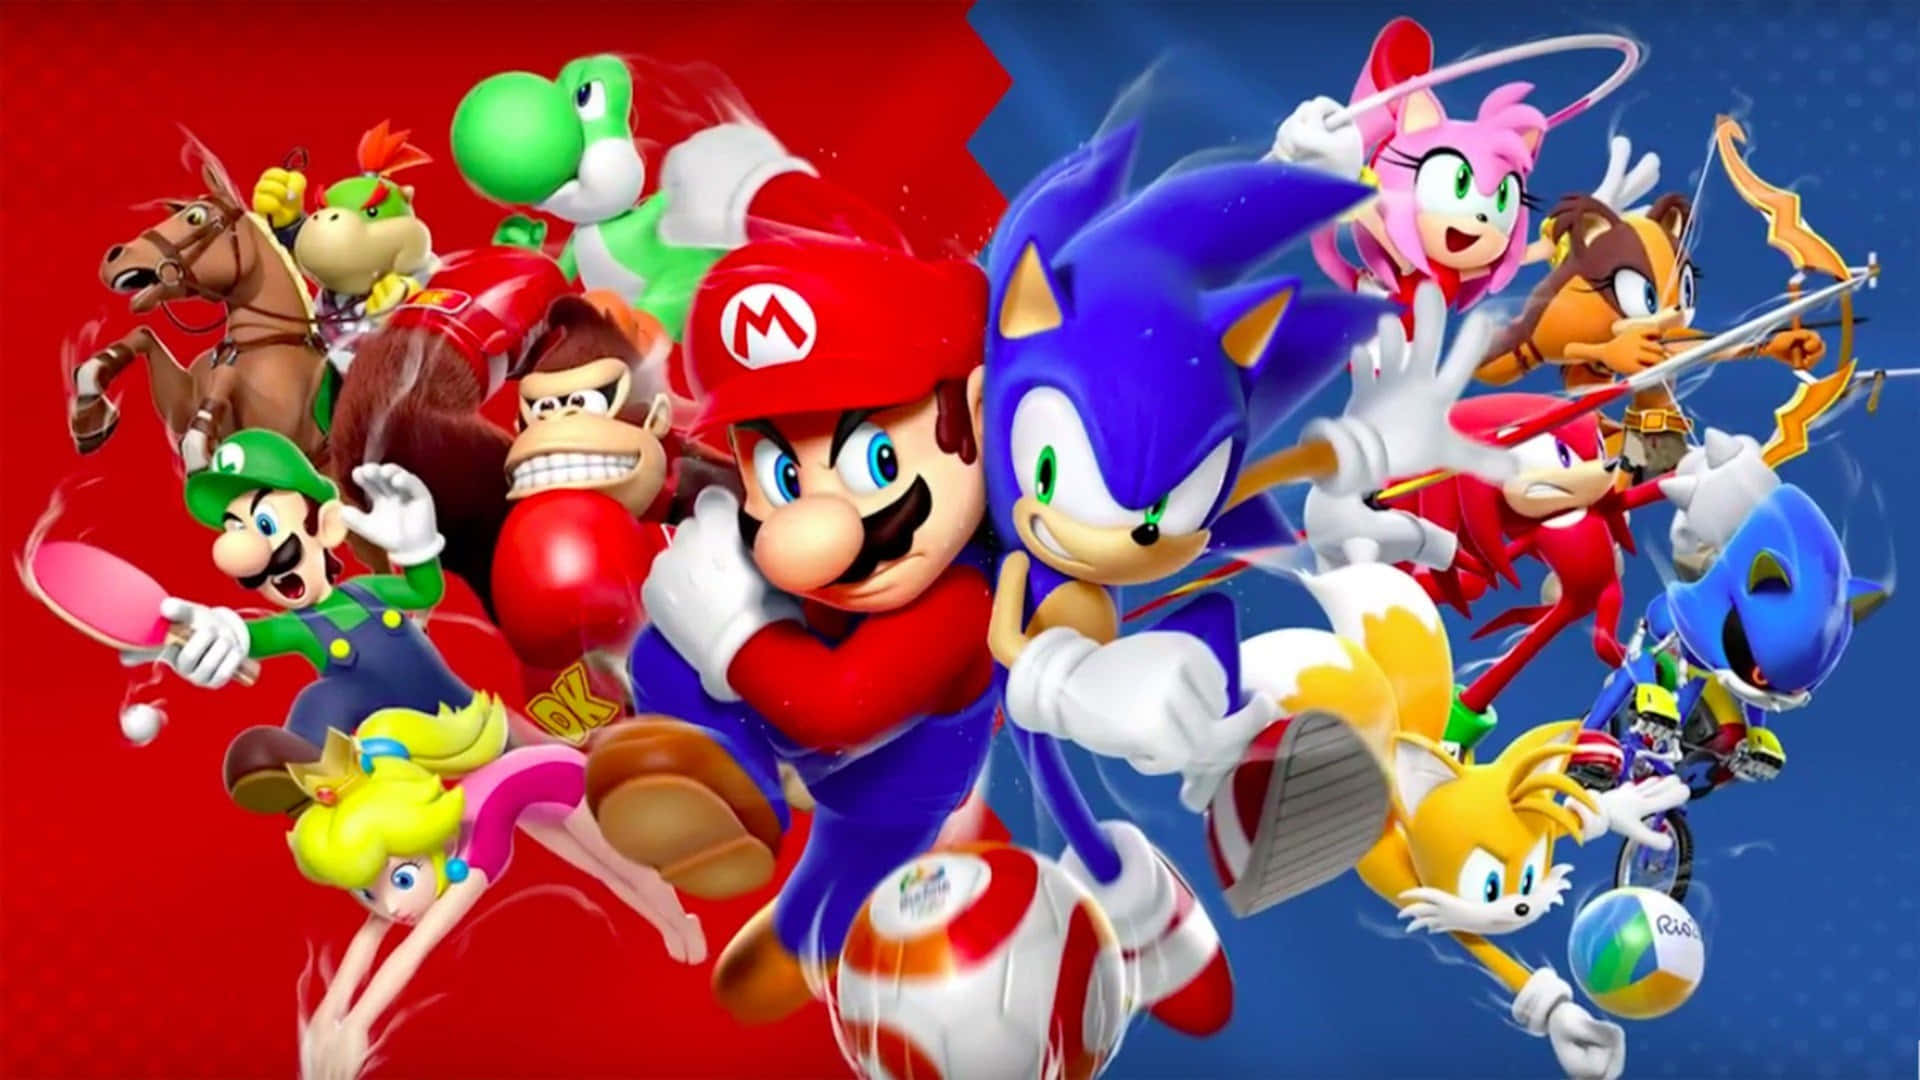 Ungrupo De Personajes De Nintendo En Un Fondo Rojo Y Azul. Fondo de pantalla